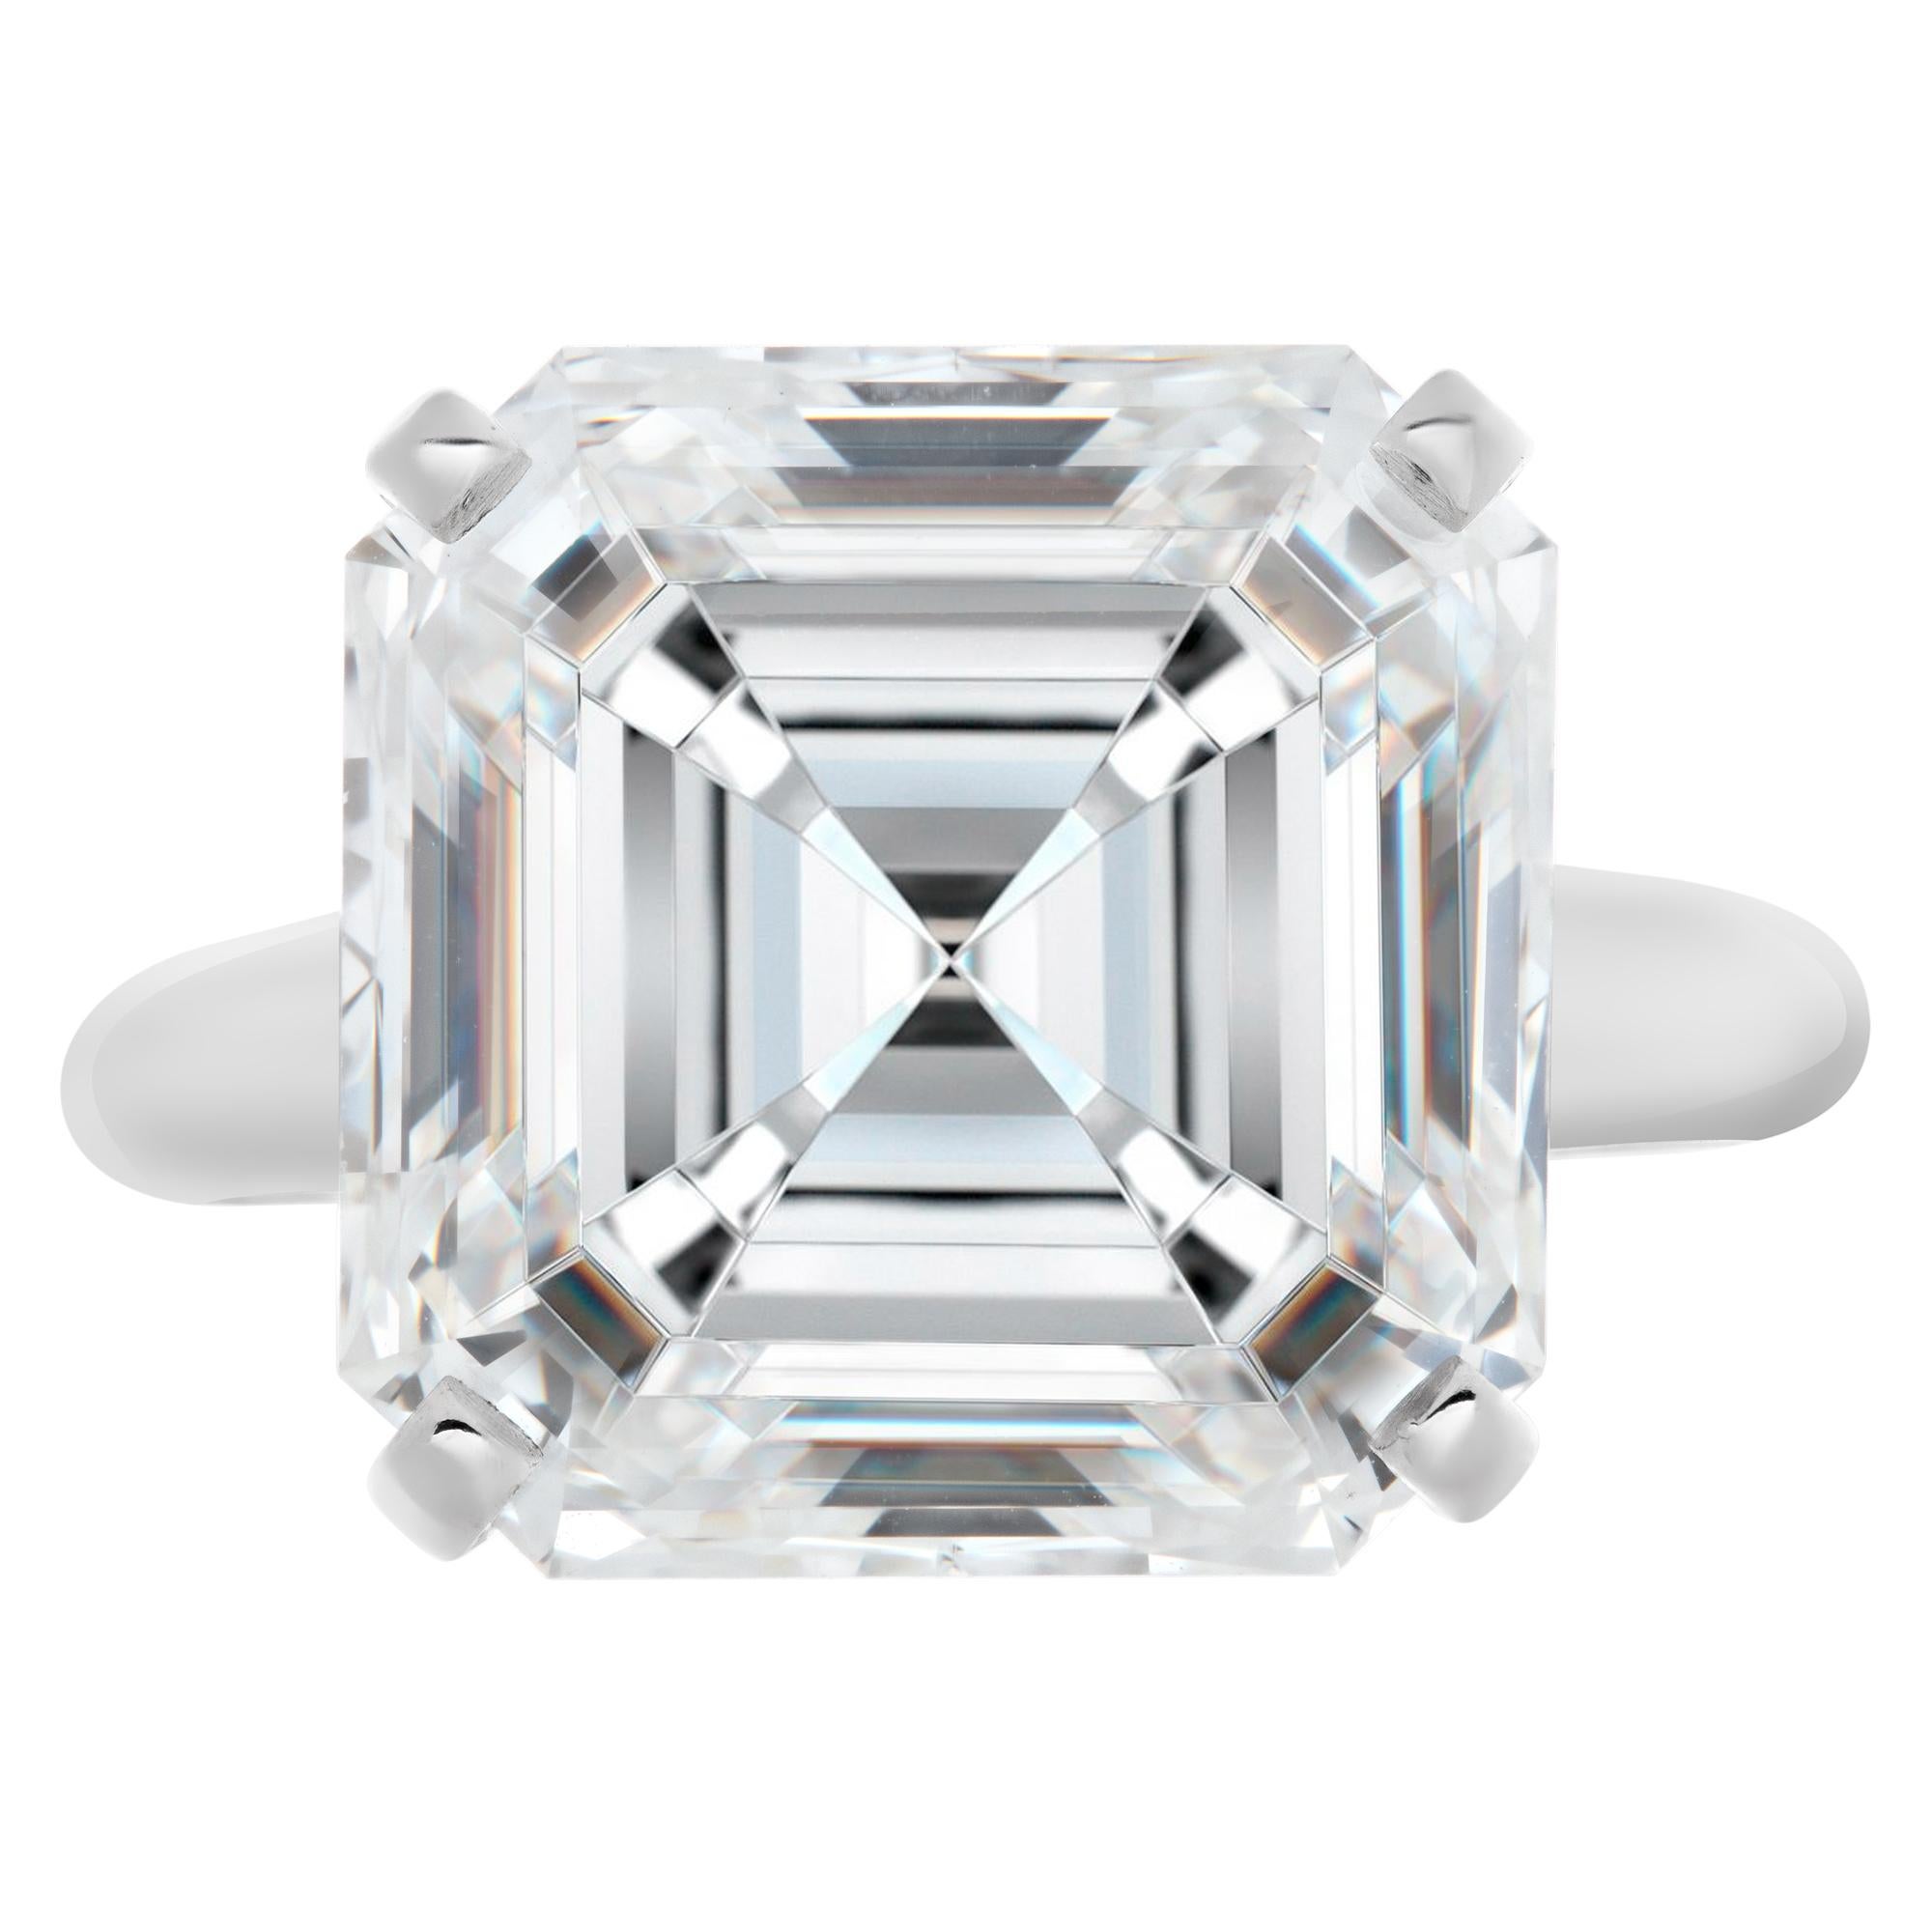 GIA-zertifizierte Asscher Cut Diamant 9,03 Karat (G Farbe, Vs 1 Klarheit) Solitär-Ring in 4 Zacken Platin-Fassung gesetzt. Größe 3

Dieser GIA-zertifizierte Ring hat derzeit die Größe 3. Einige Artikel können nach oben oder unten angepasst werden,